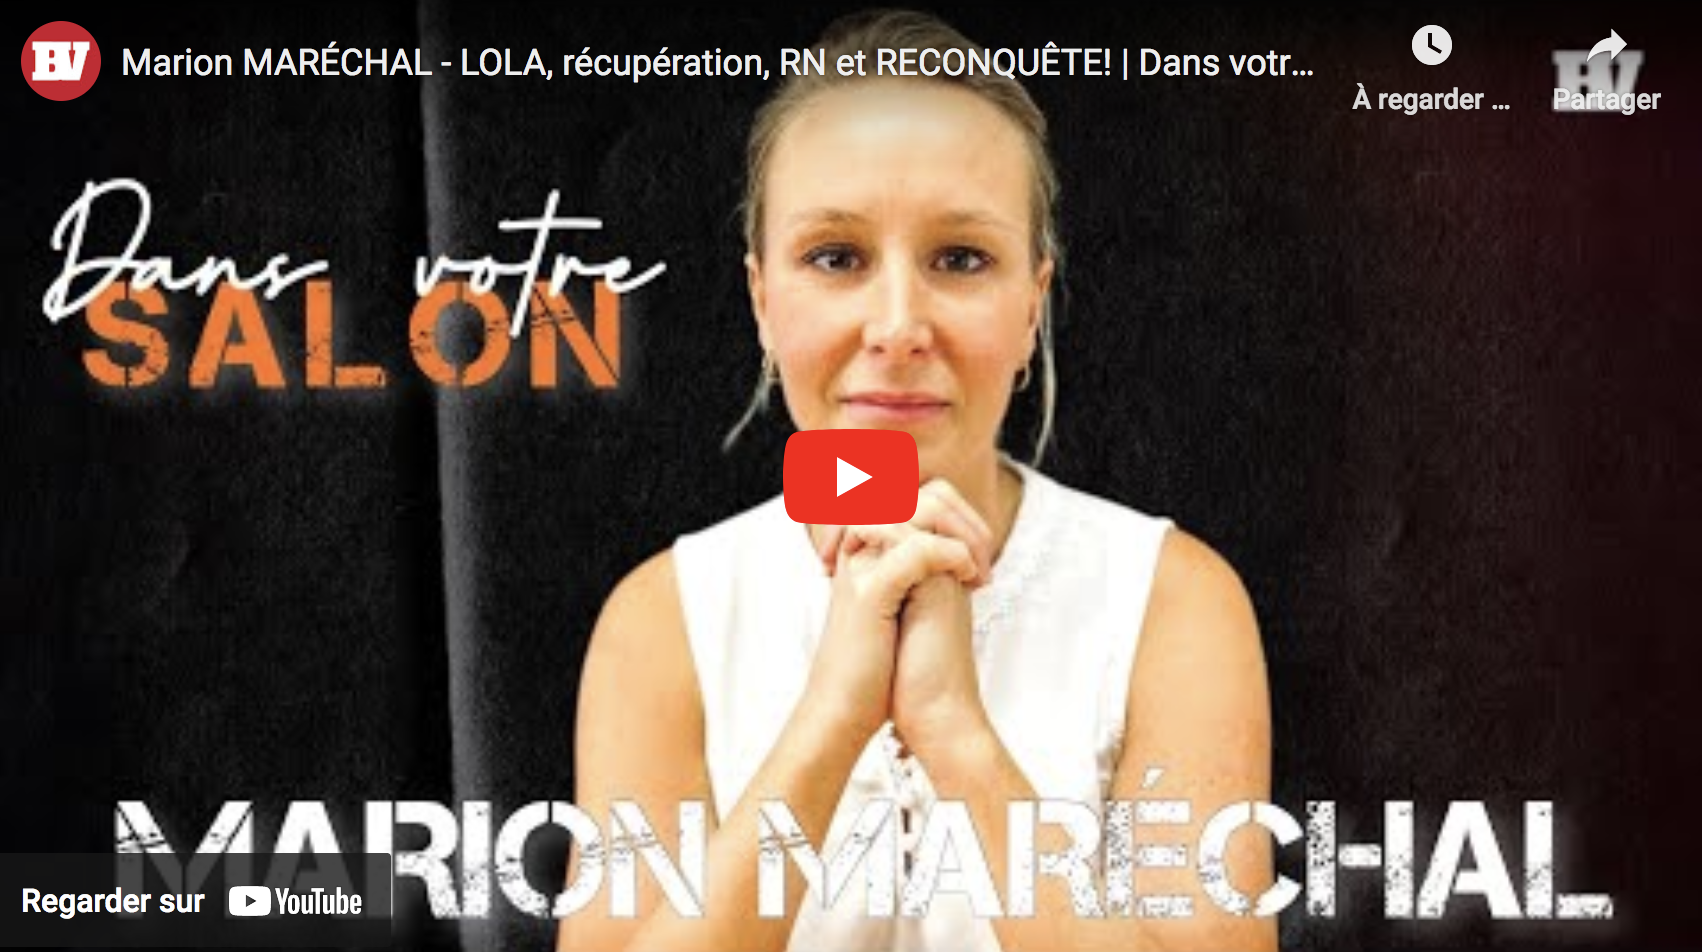 Lola, récupération, RN et Reconquête! : Entretien avec Marion Maréchal (VIDÉO)